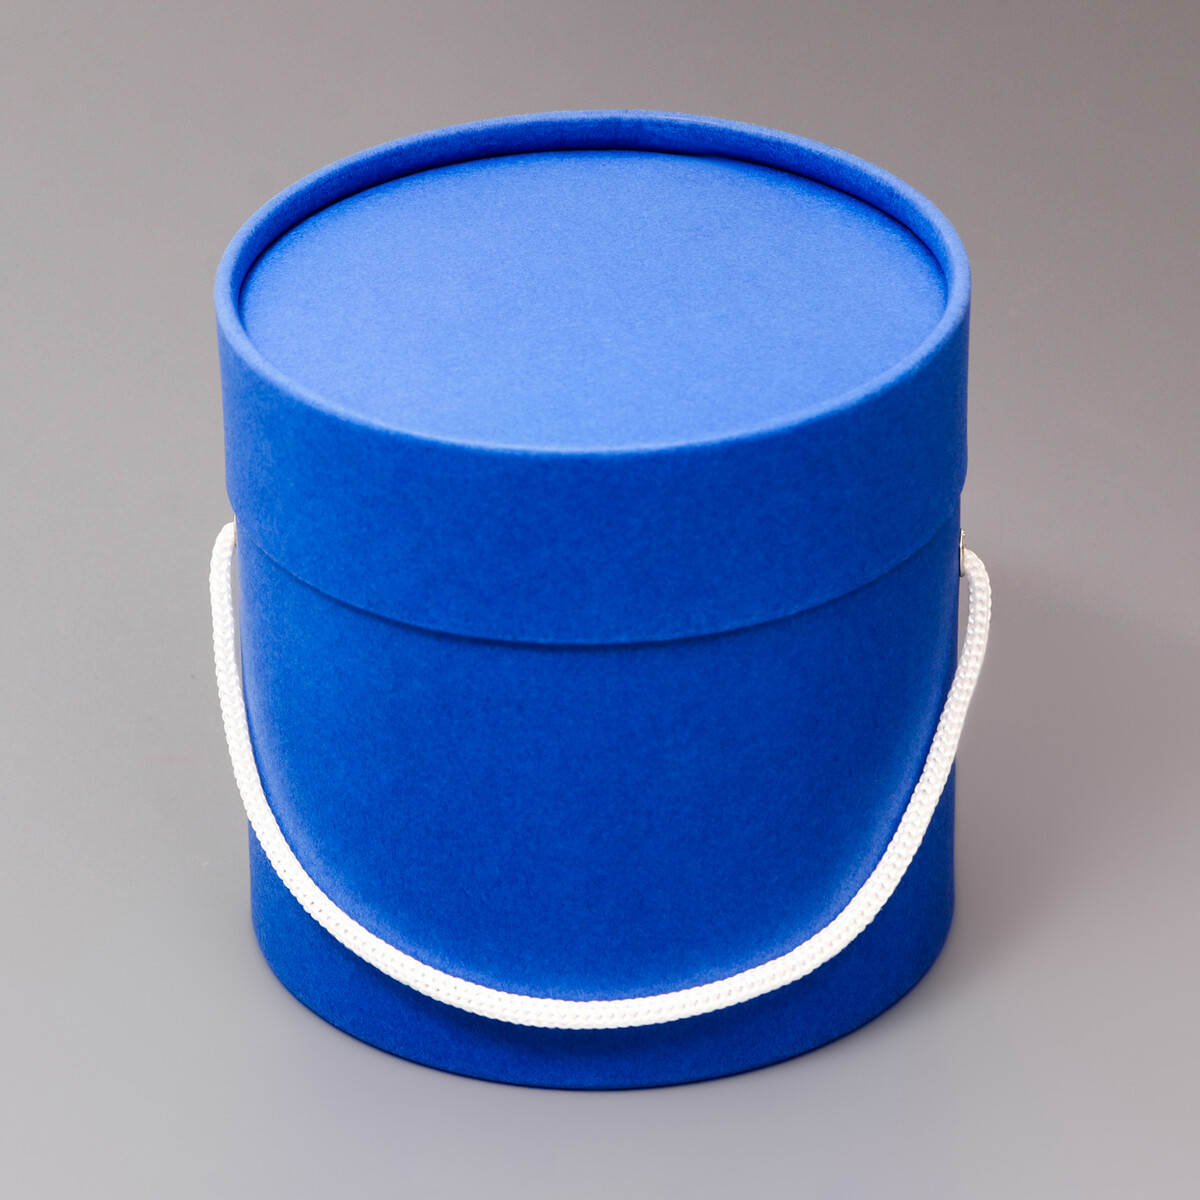 Подарочная коробка, круглая, синяя,с шнурком, 12 х 12 см круглая подарочная коробка